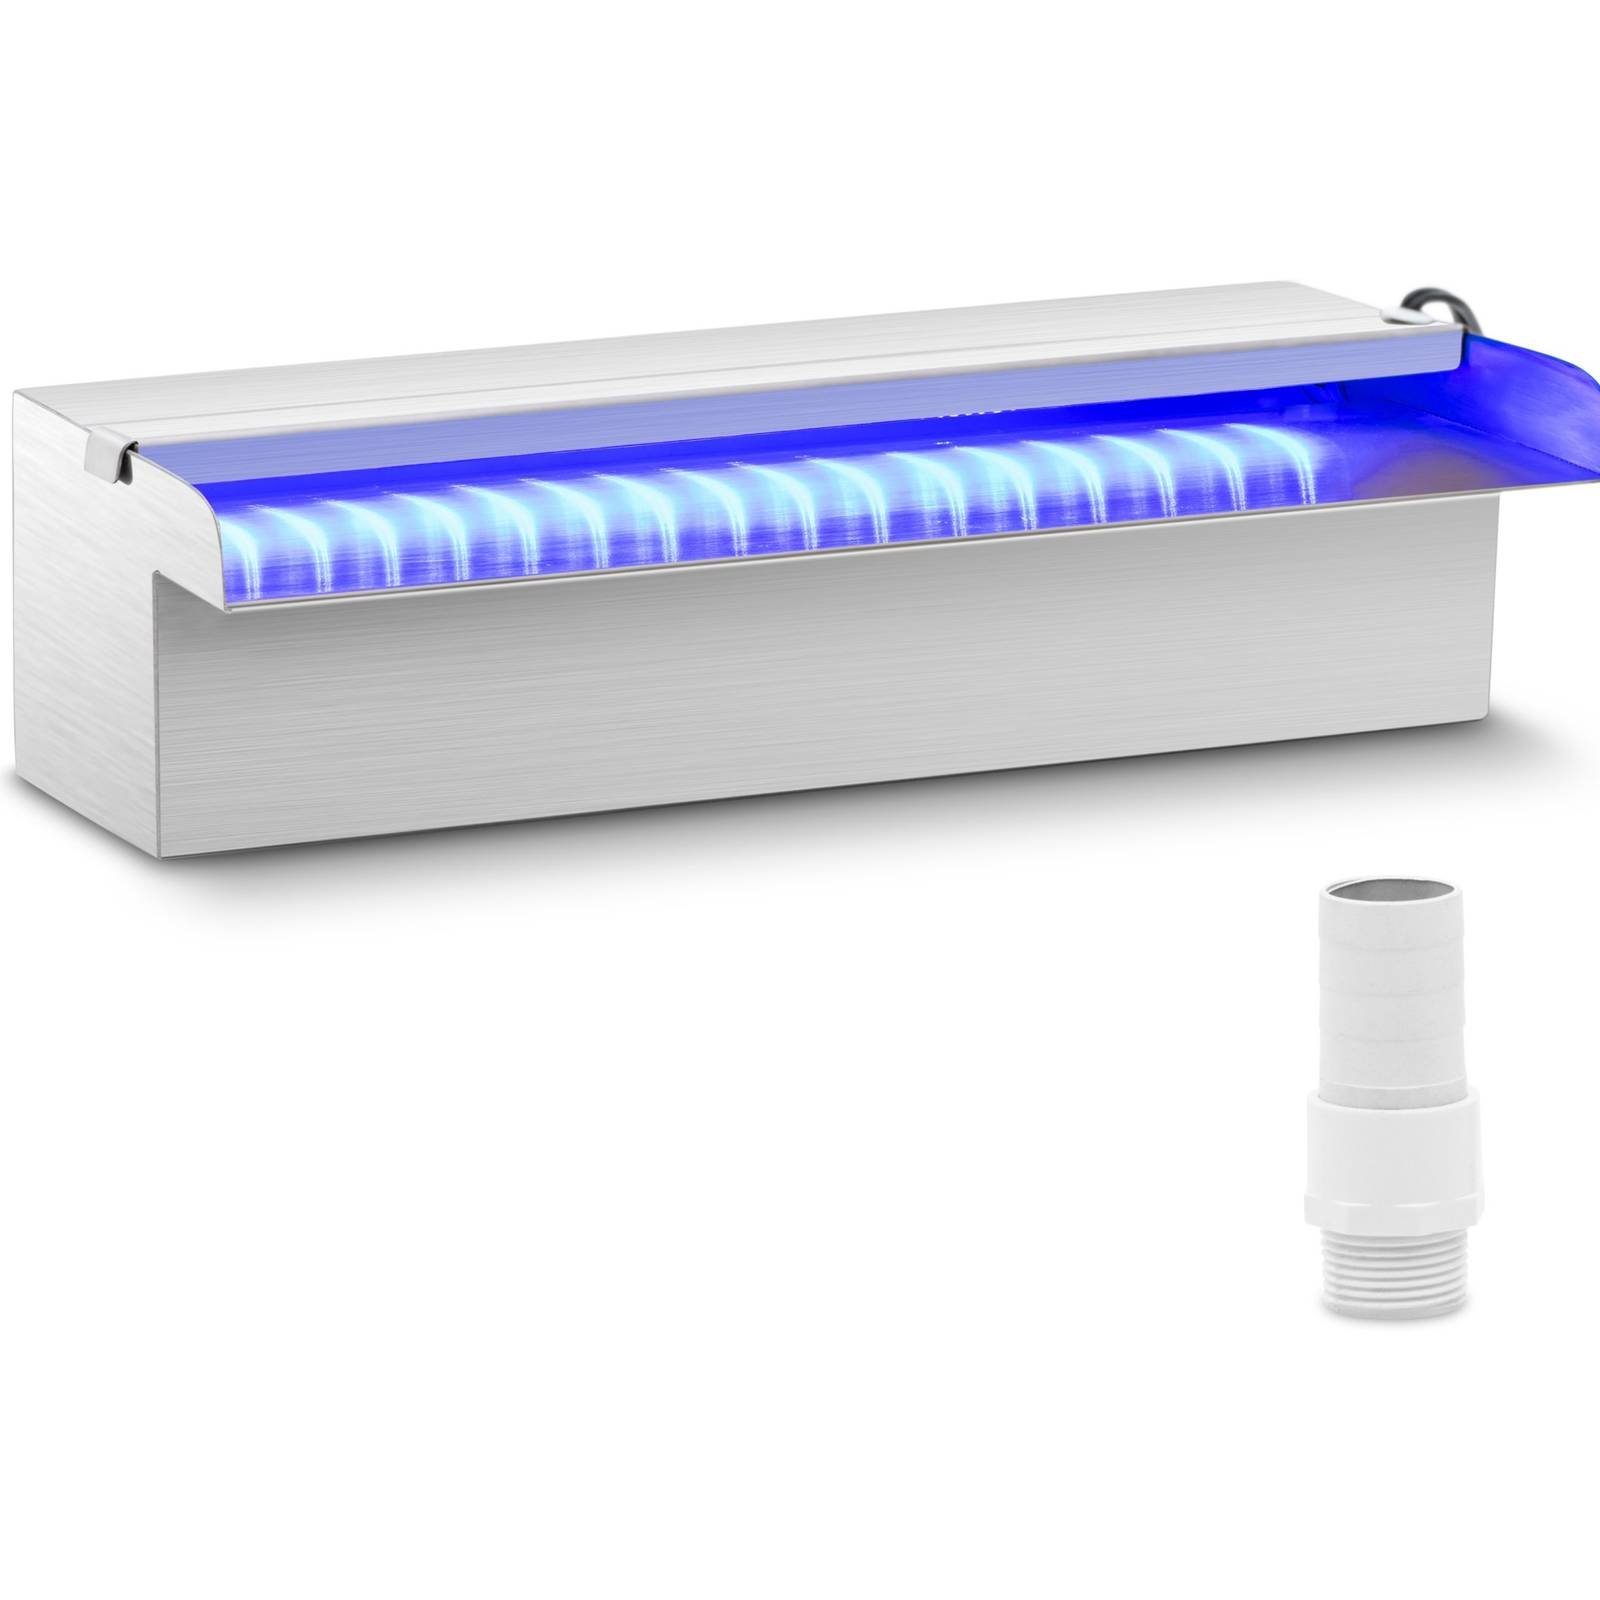 Uniprodo Poolwasserfall Schwalldusche 30cm LED-Beleuchtung - Blau/Weiß offener Wasserauslauf